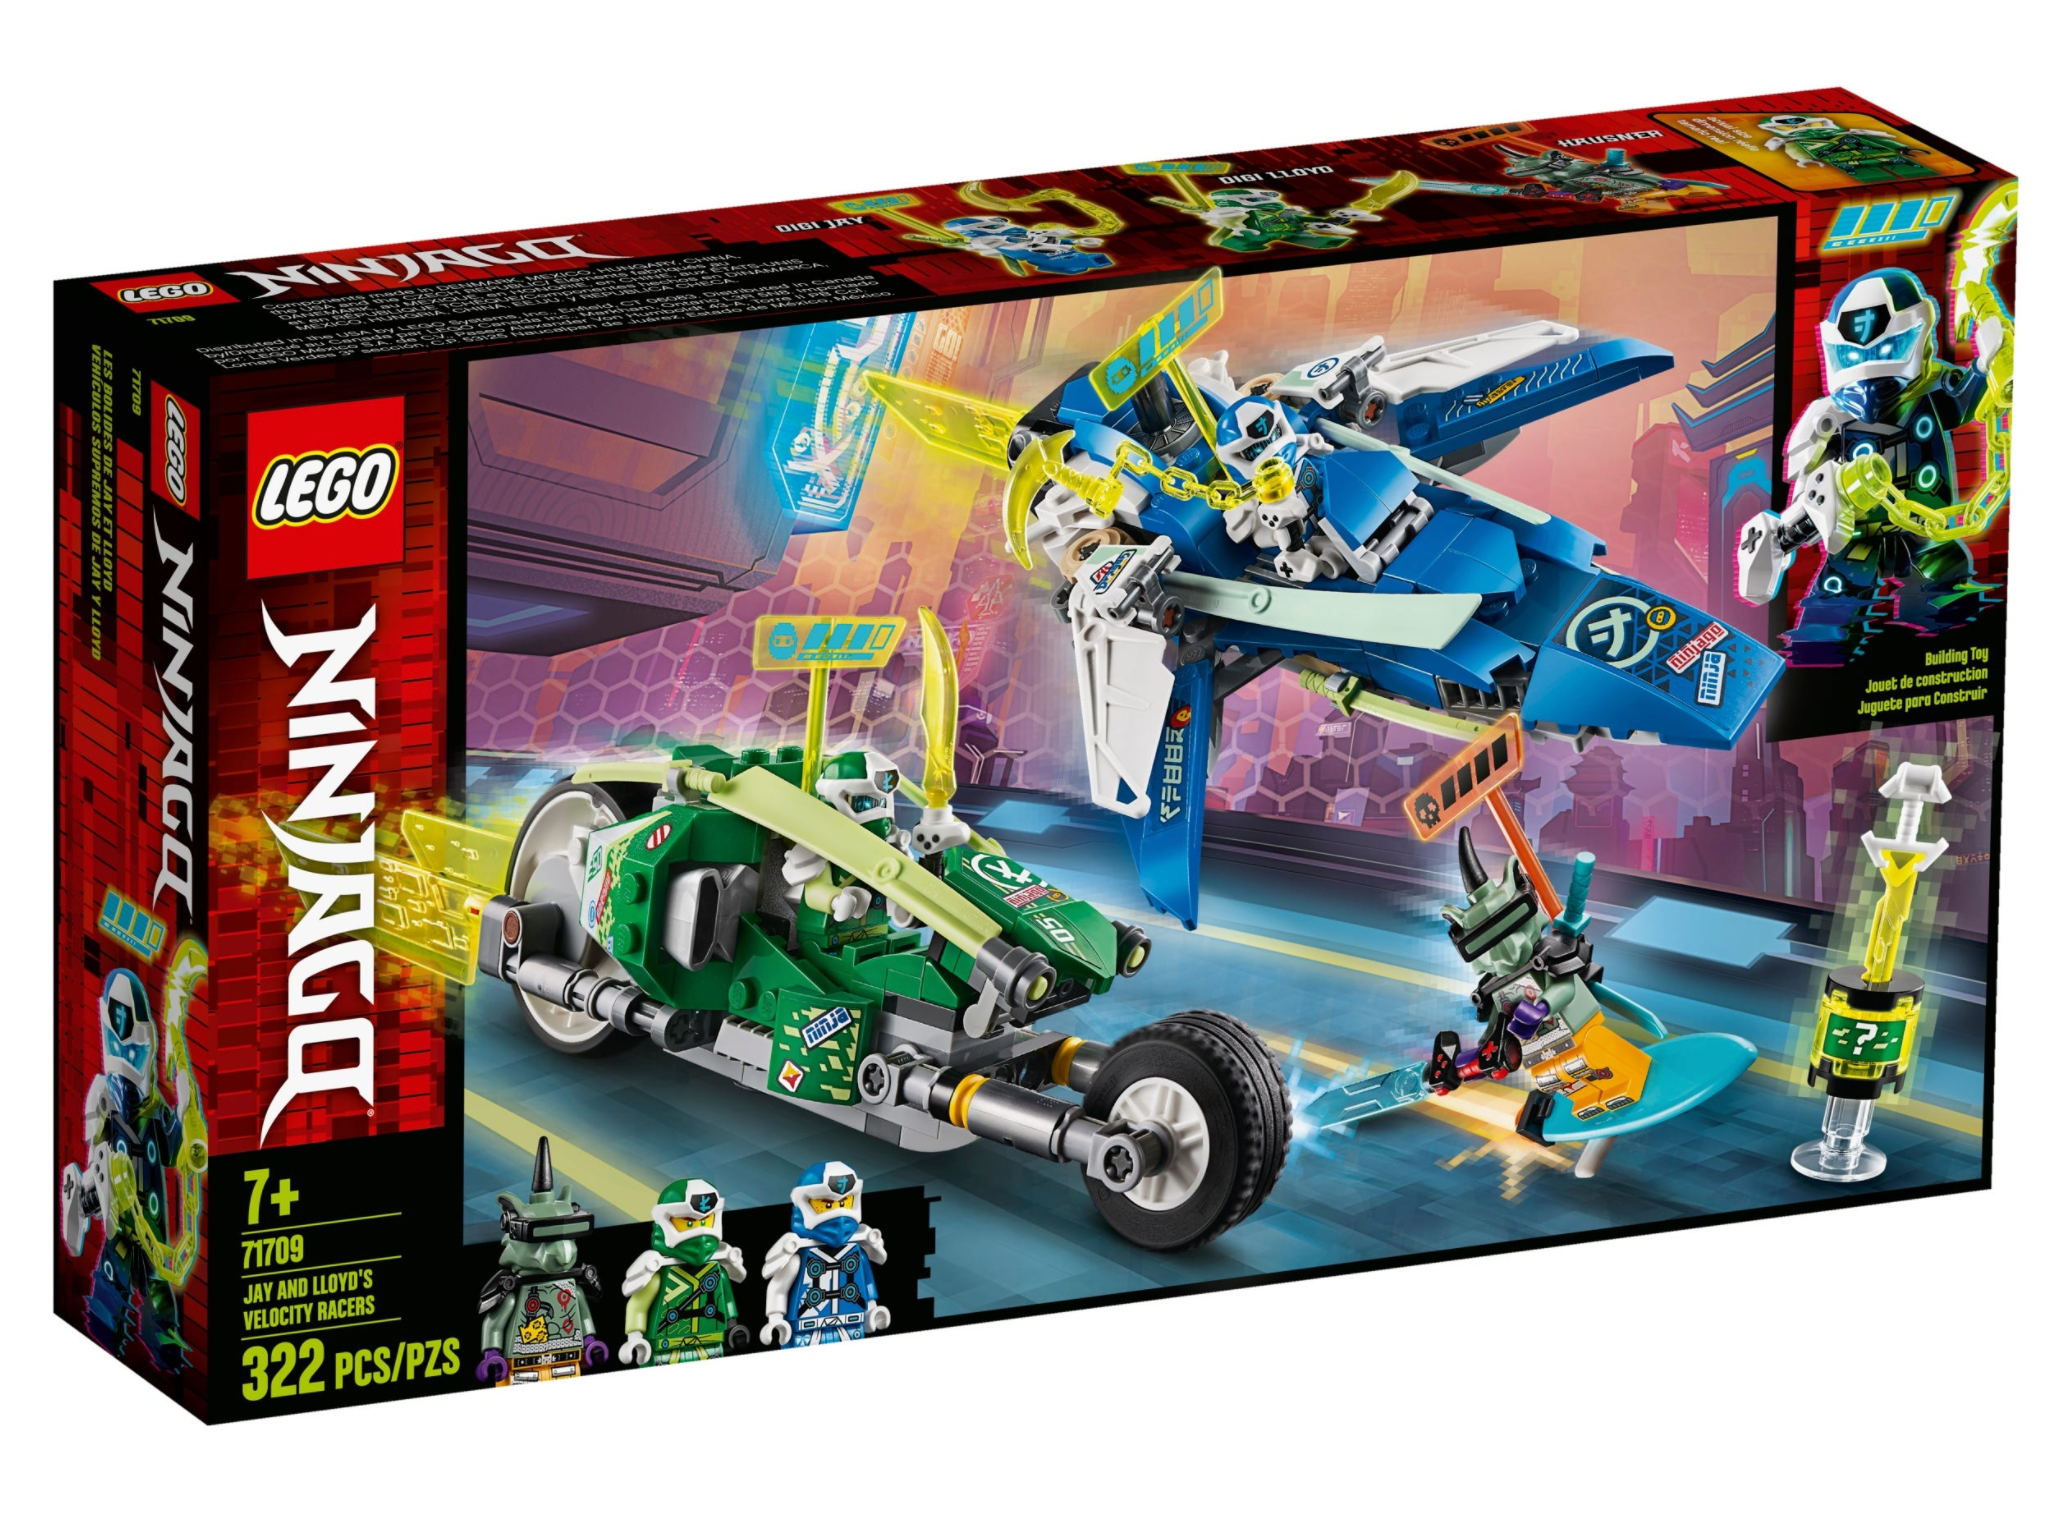 LEGO: Ninjago - Jay and Lloyd's Velocity Racers